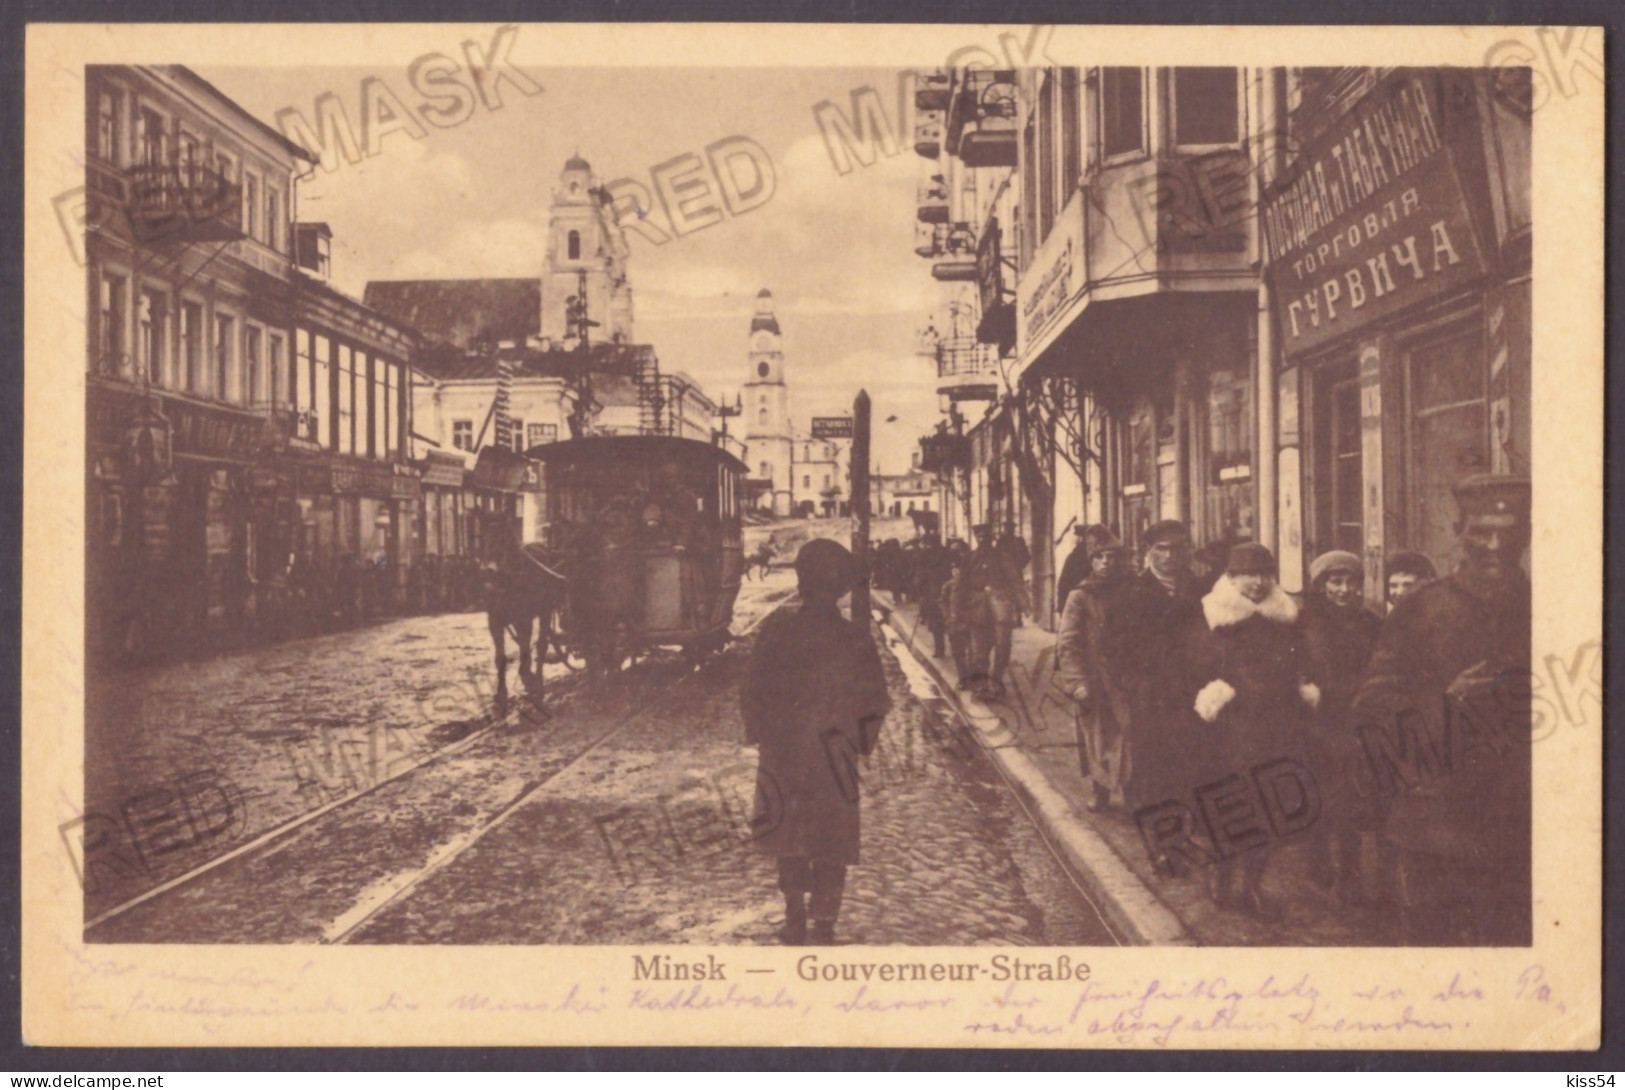 BL 09 - 23588 MINSK, Street Stores, Tramway, Belarus - Old Postcard CENSOR - Used - 1913 - Belarus